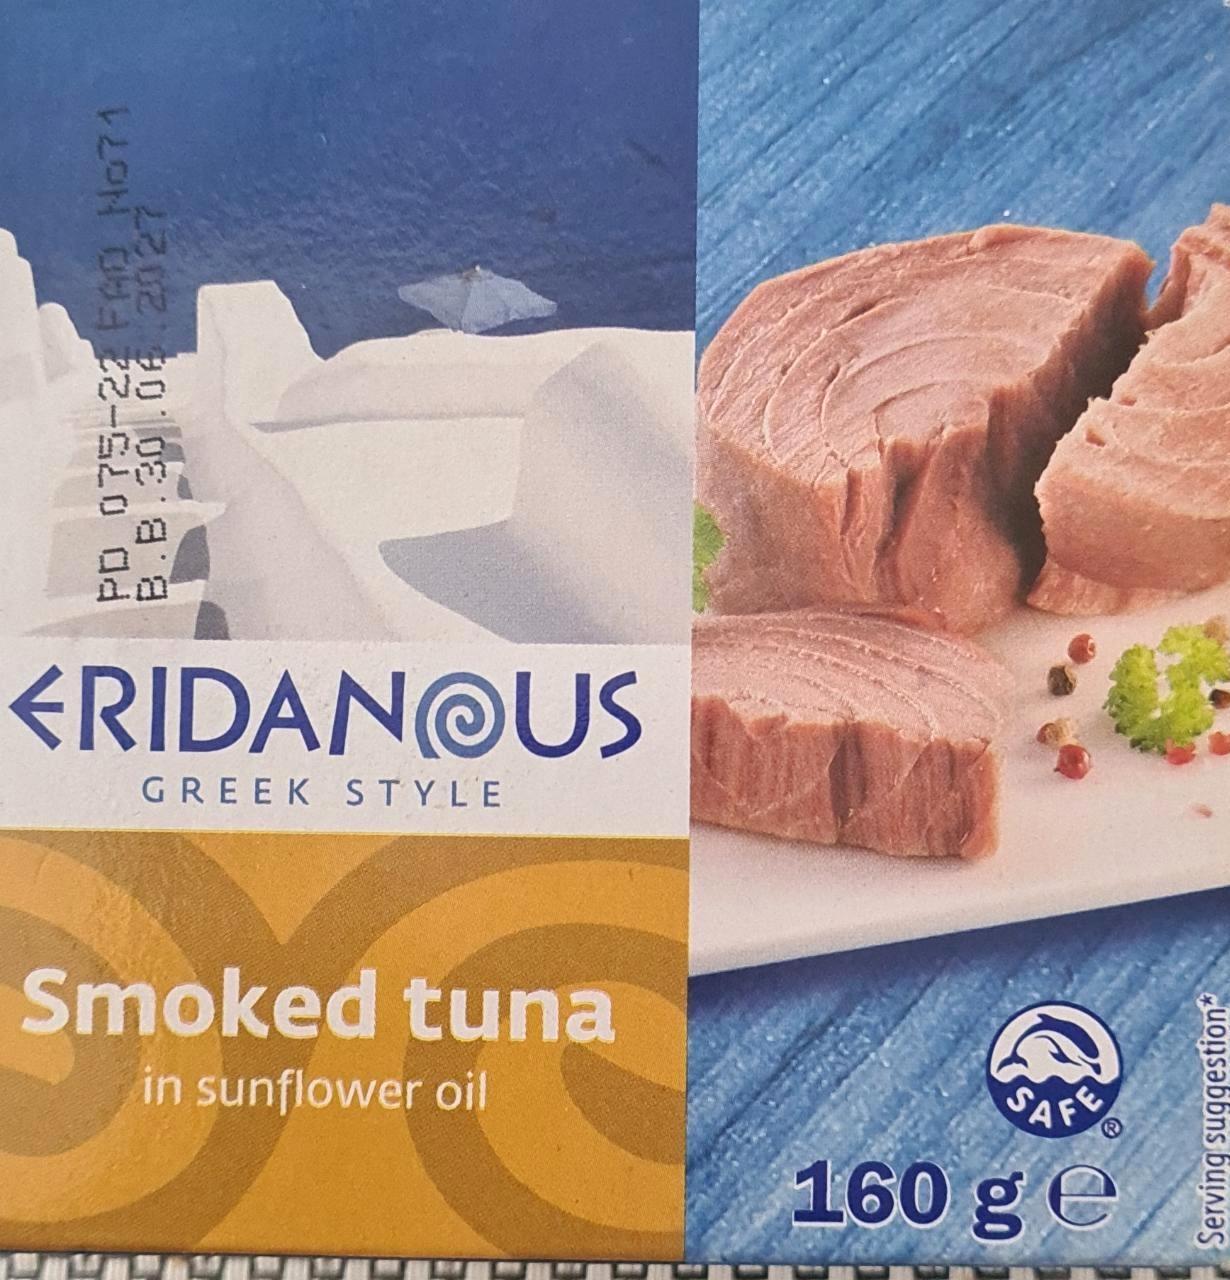 Képek - Smoked tuna in sunflower oil Eridanous